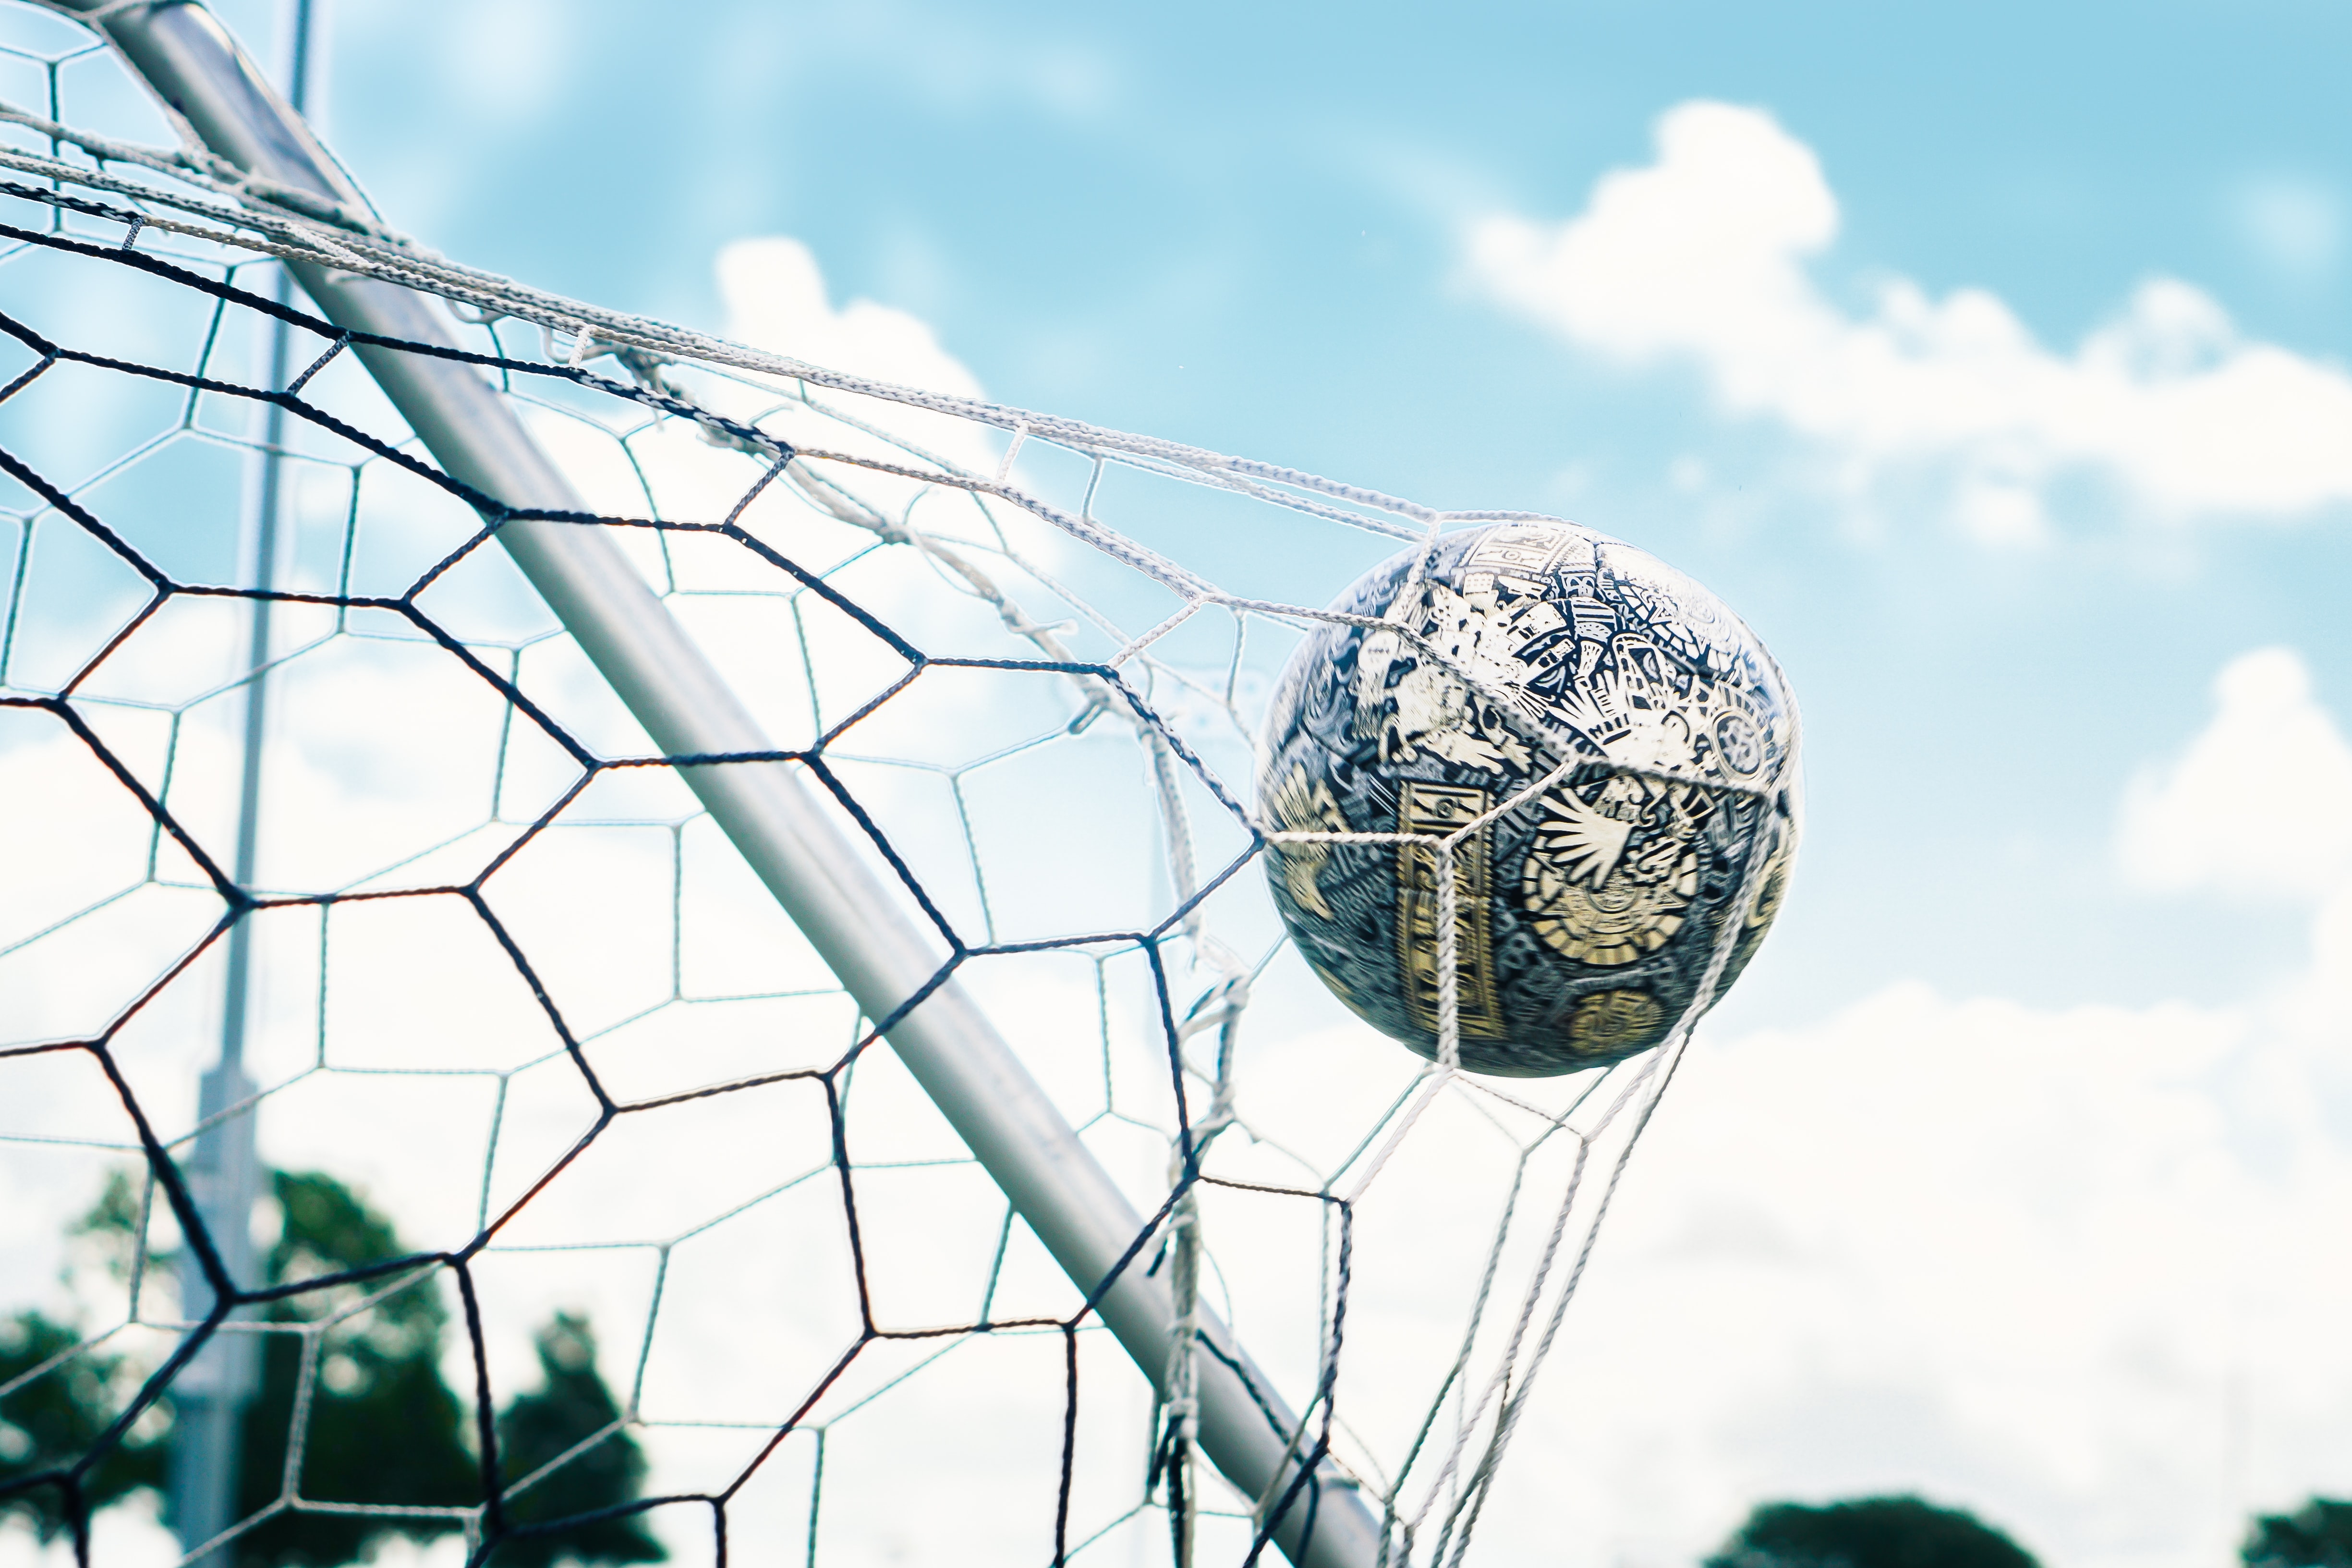 Concurso Nacional de Escultura “Día del Futbolista”, la obra ganadora